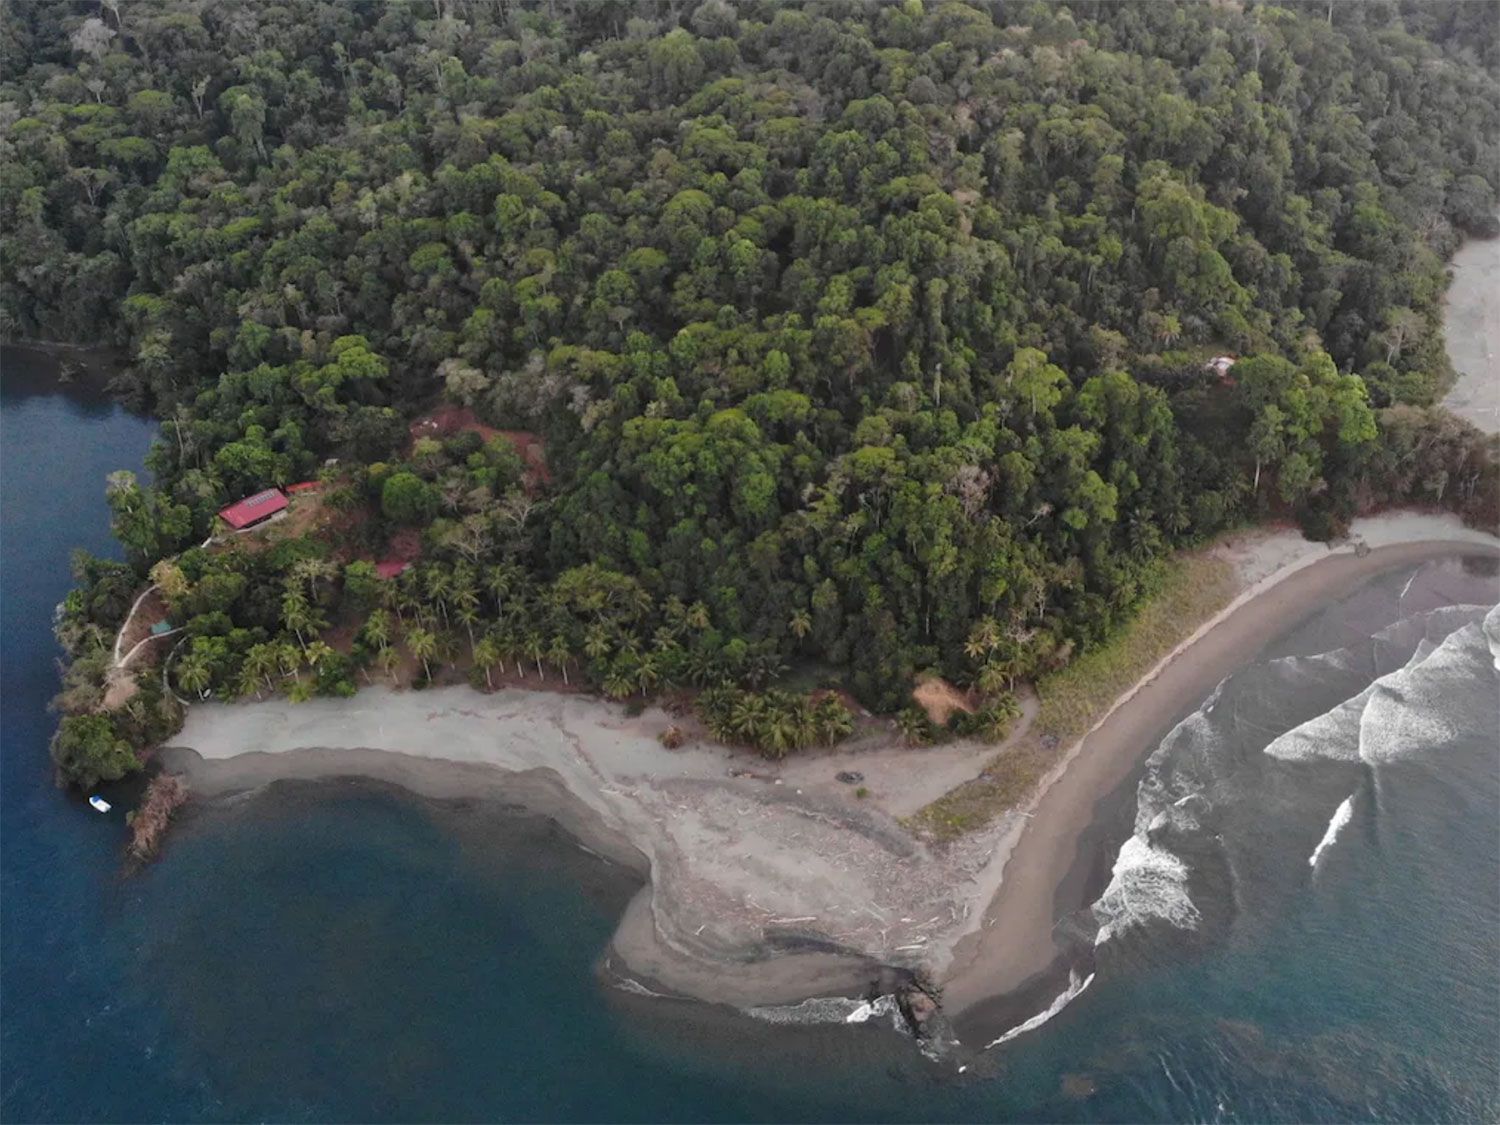 10 increíbles propiedades de Airbnb que puedes alquilar en Costa Rica